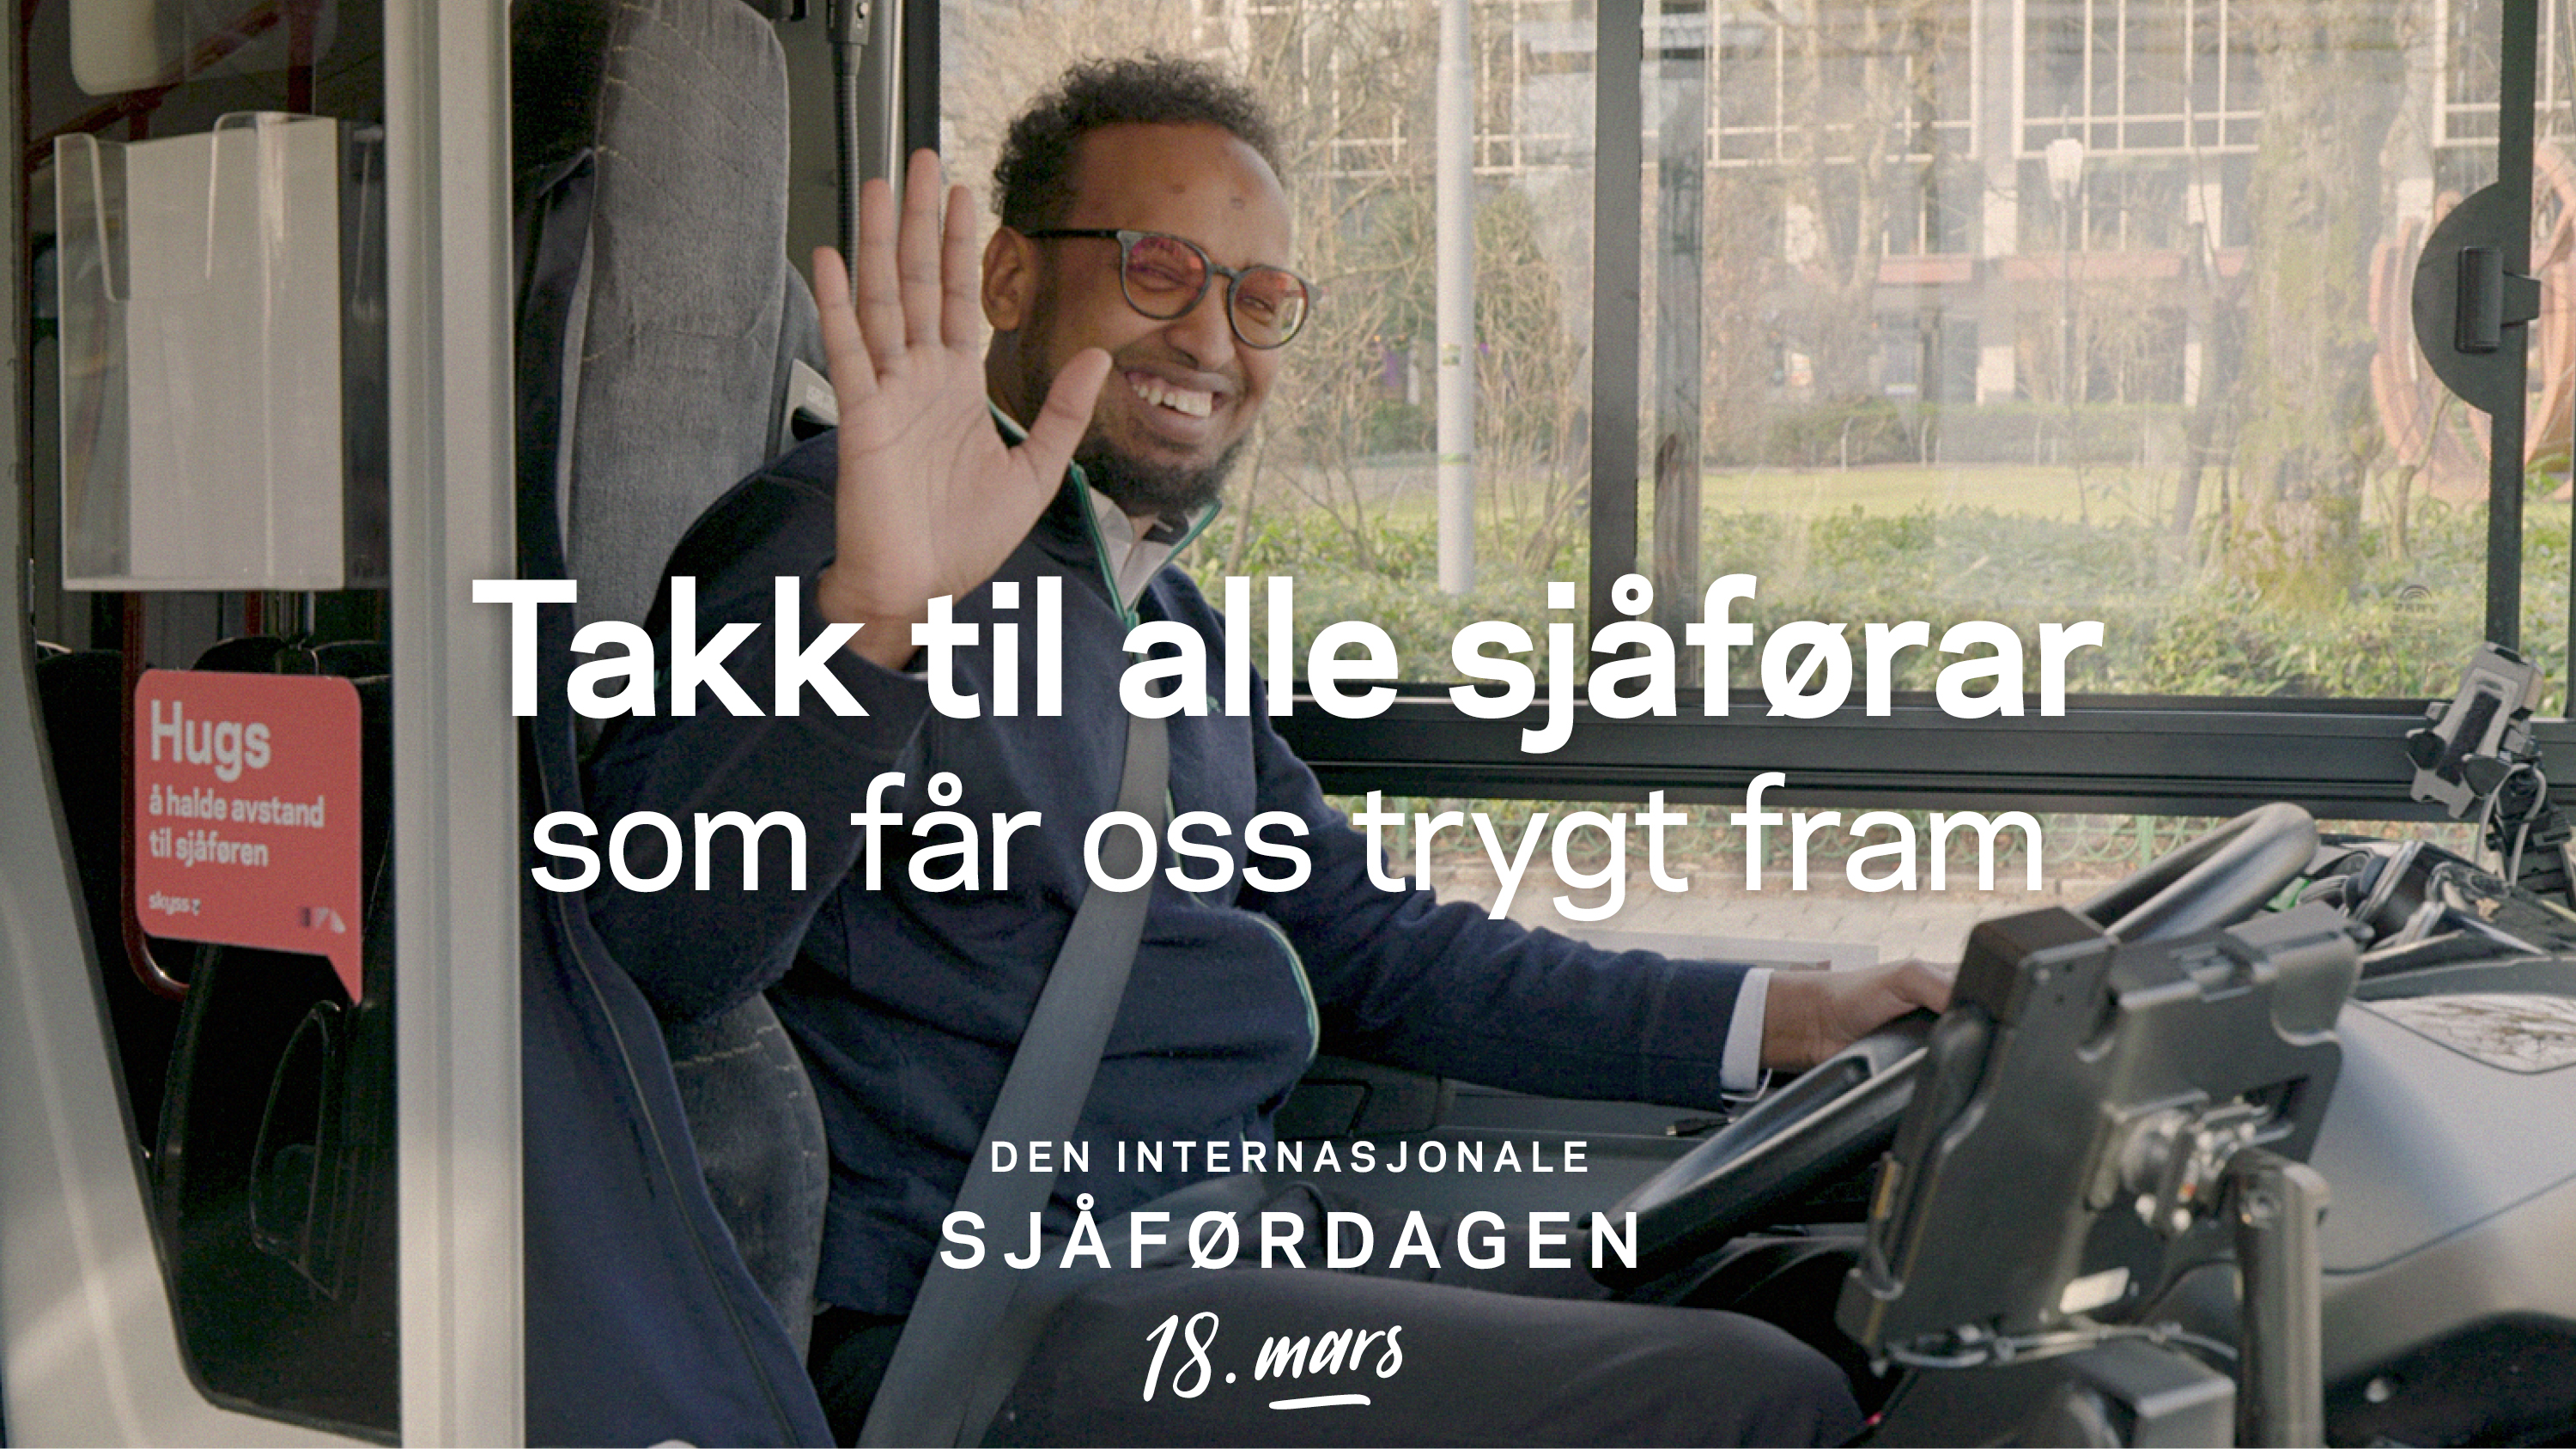 Smilande, vinkande bussjåfør. Tekst over bildet: "Takk til alle sjåførar som får oss trygt fram. Den internasjonale sjåførdagen 18. mars"